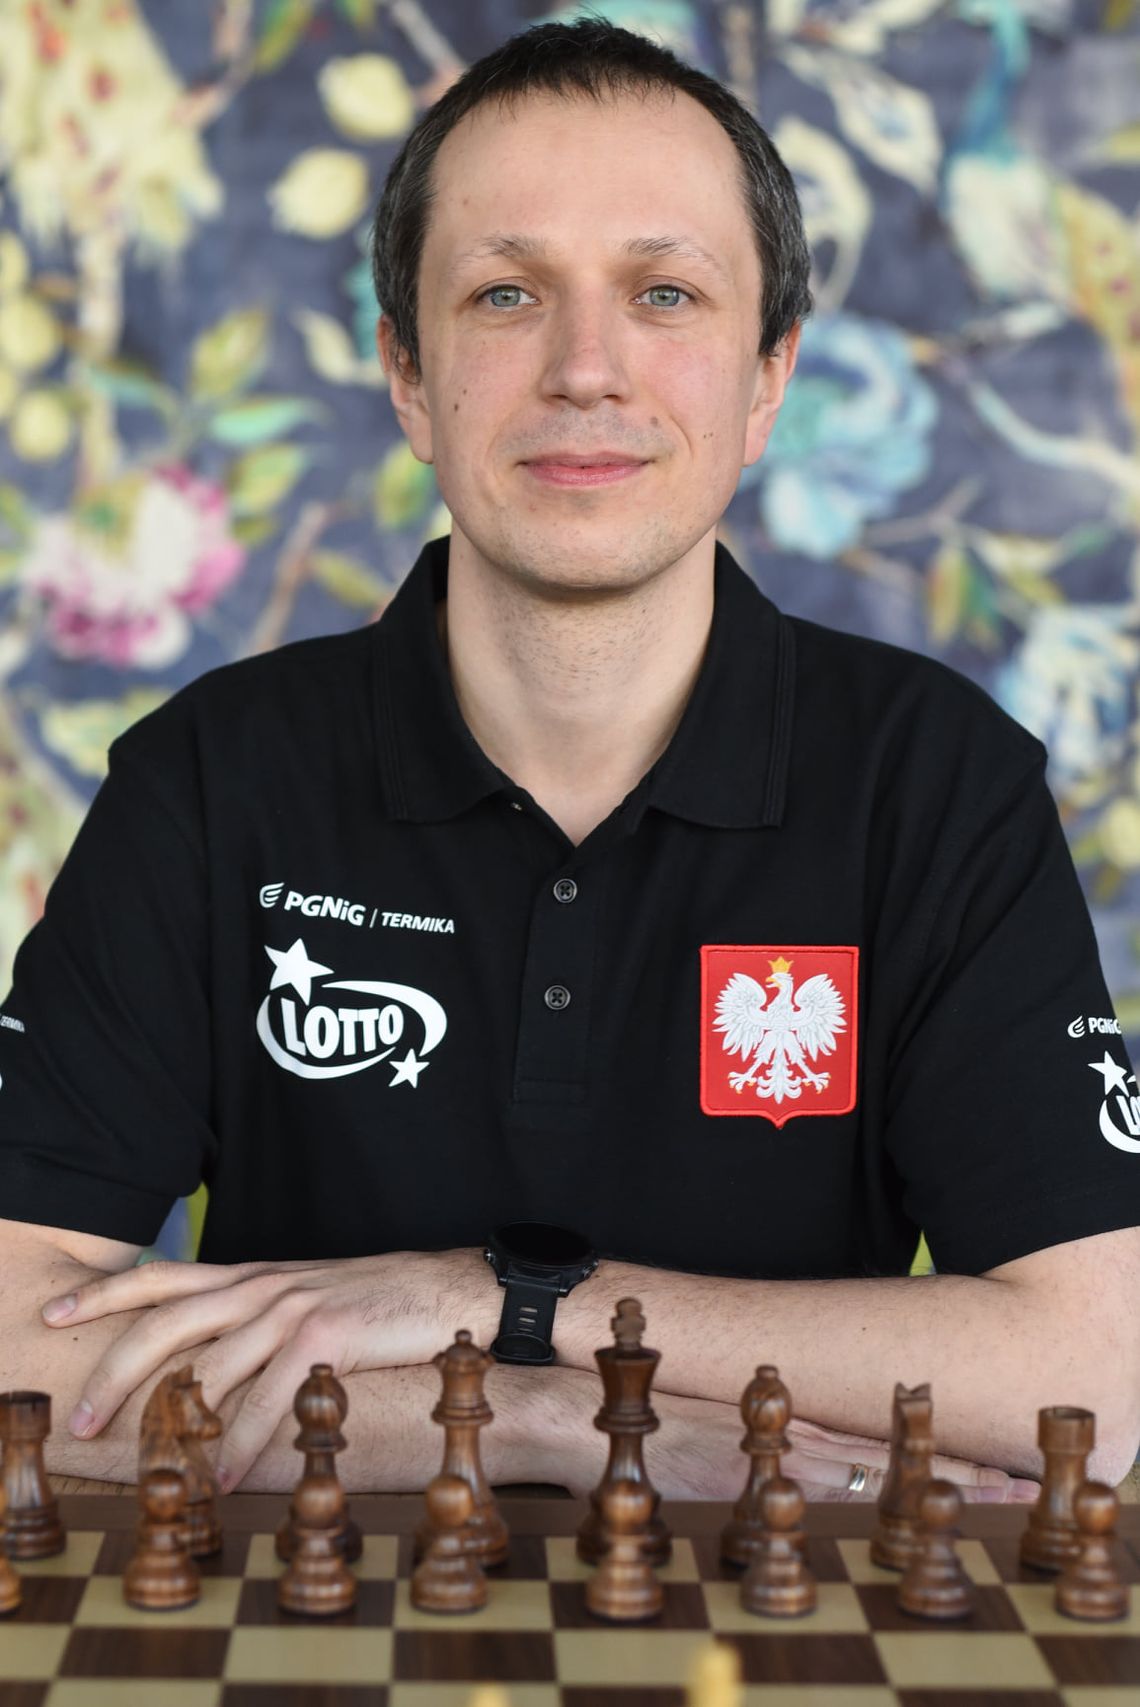 Wielki sukces naszego szachisty. Radek Wojtaszek po raz czwarty mistrzem Polski